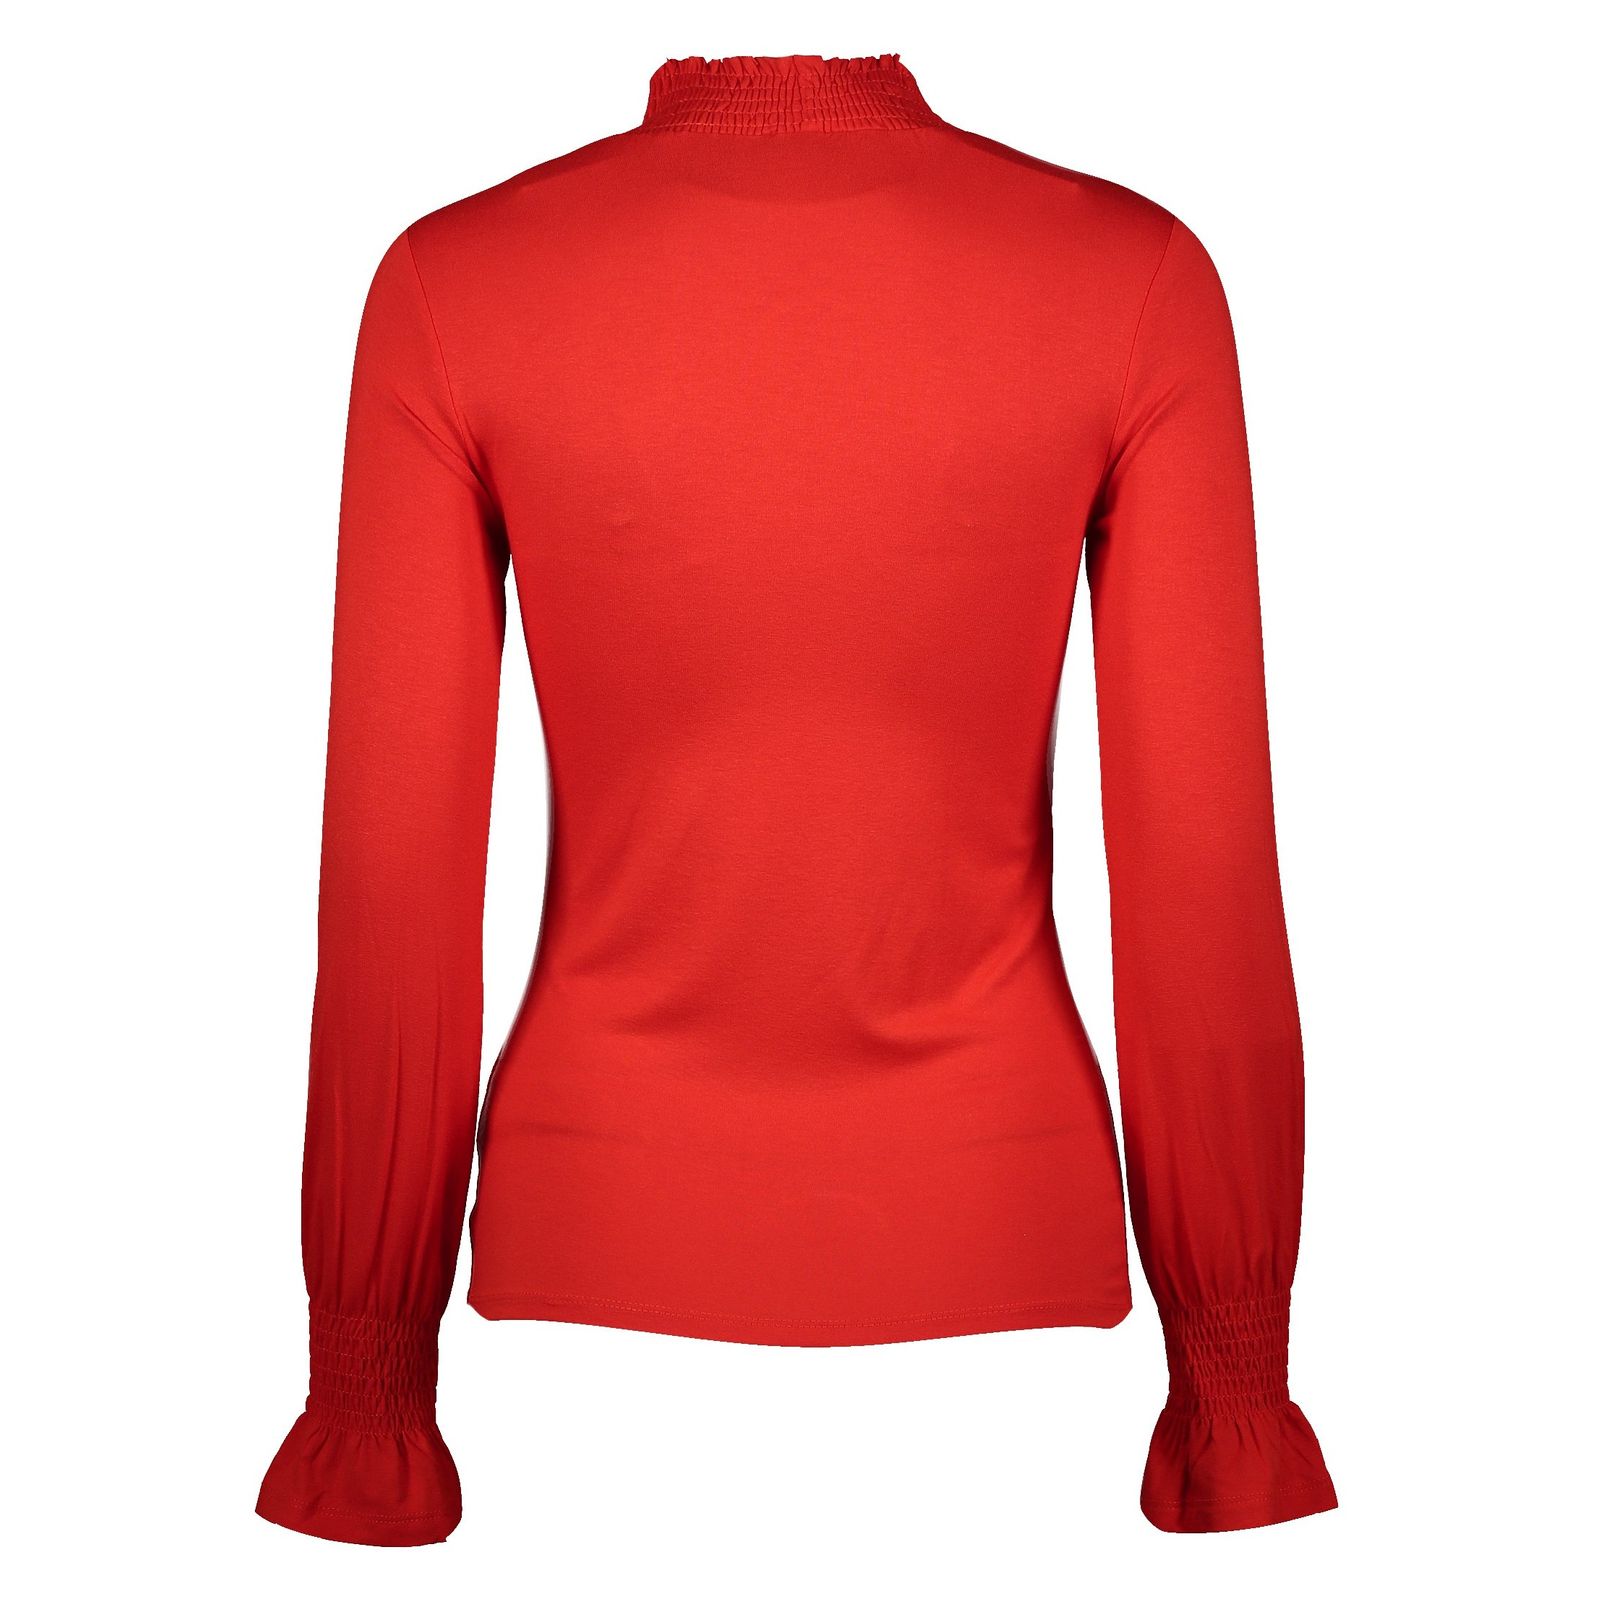 تی شرت ویسکوز یقه اسکی زنانه - رد هرینگ - قرمز - 3